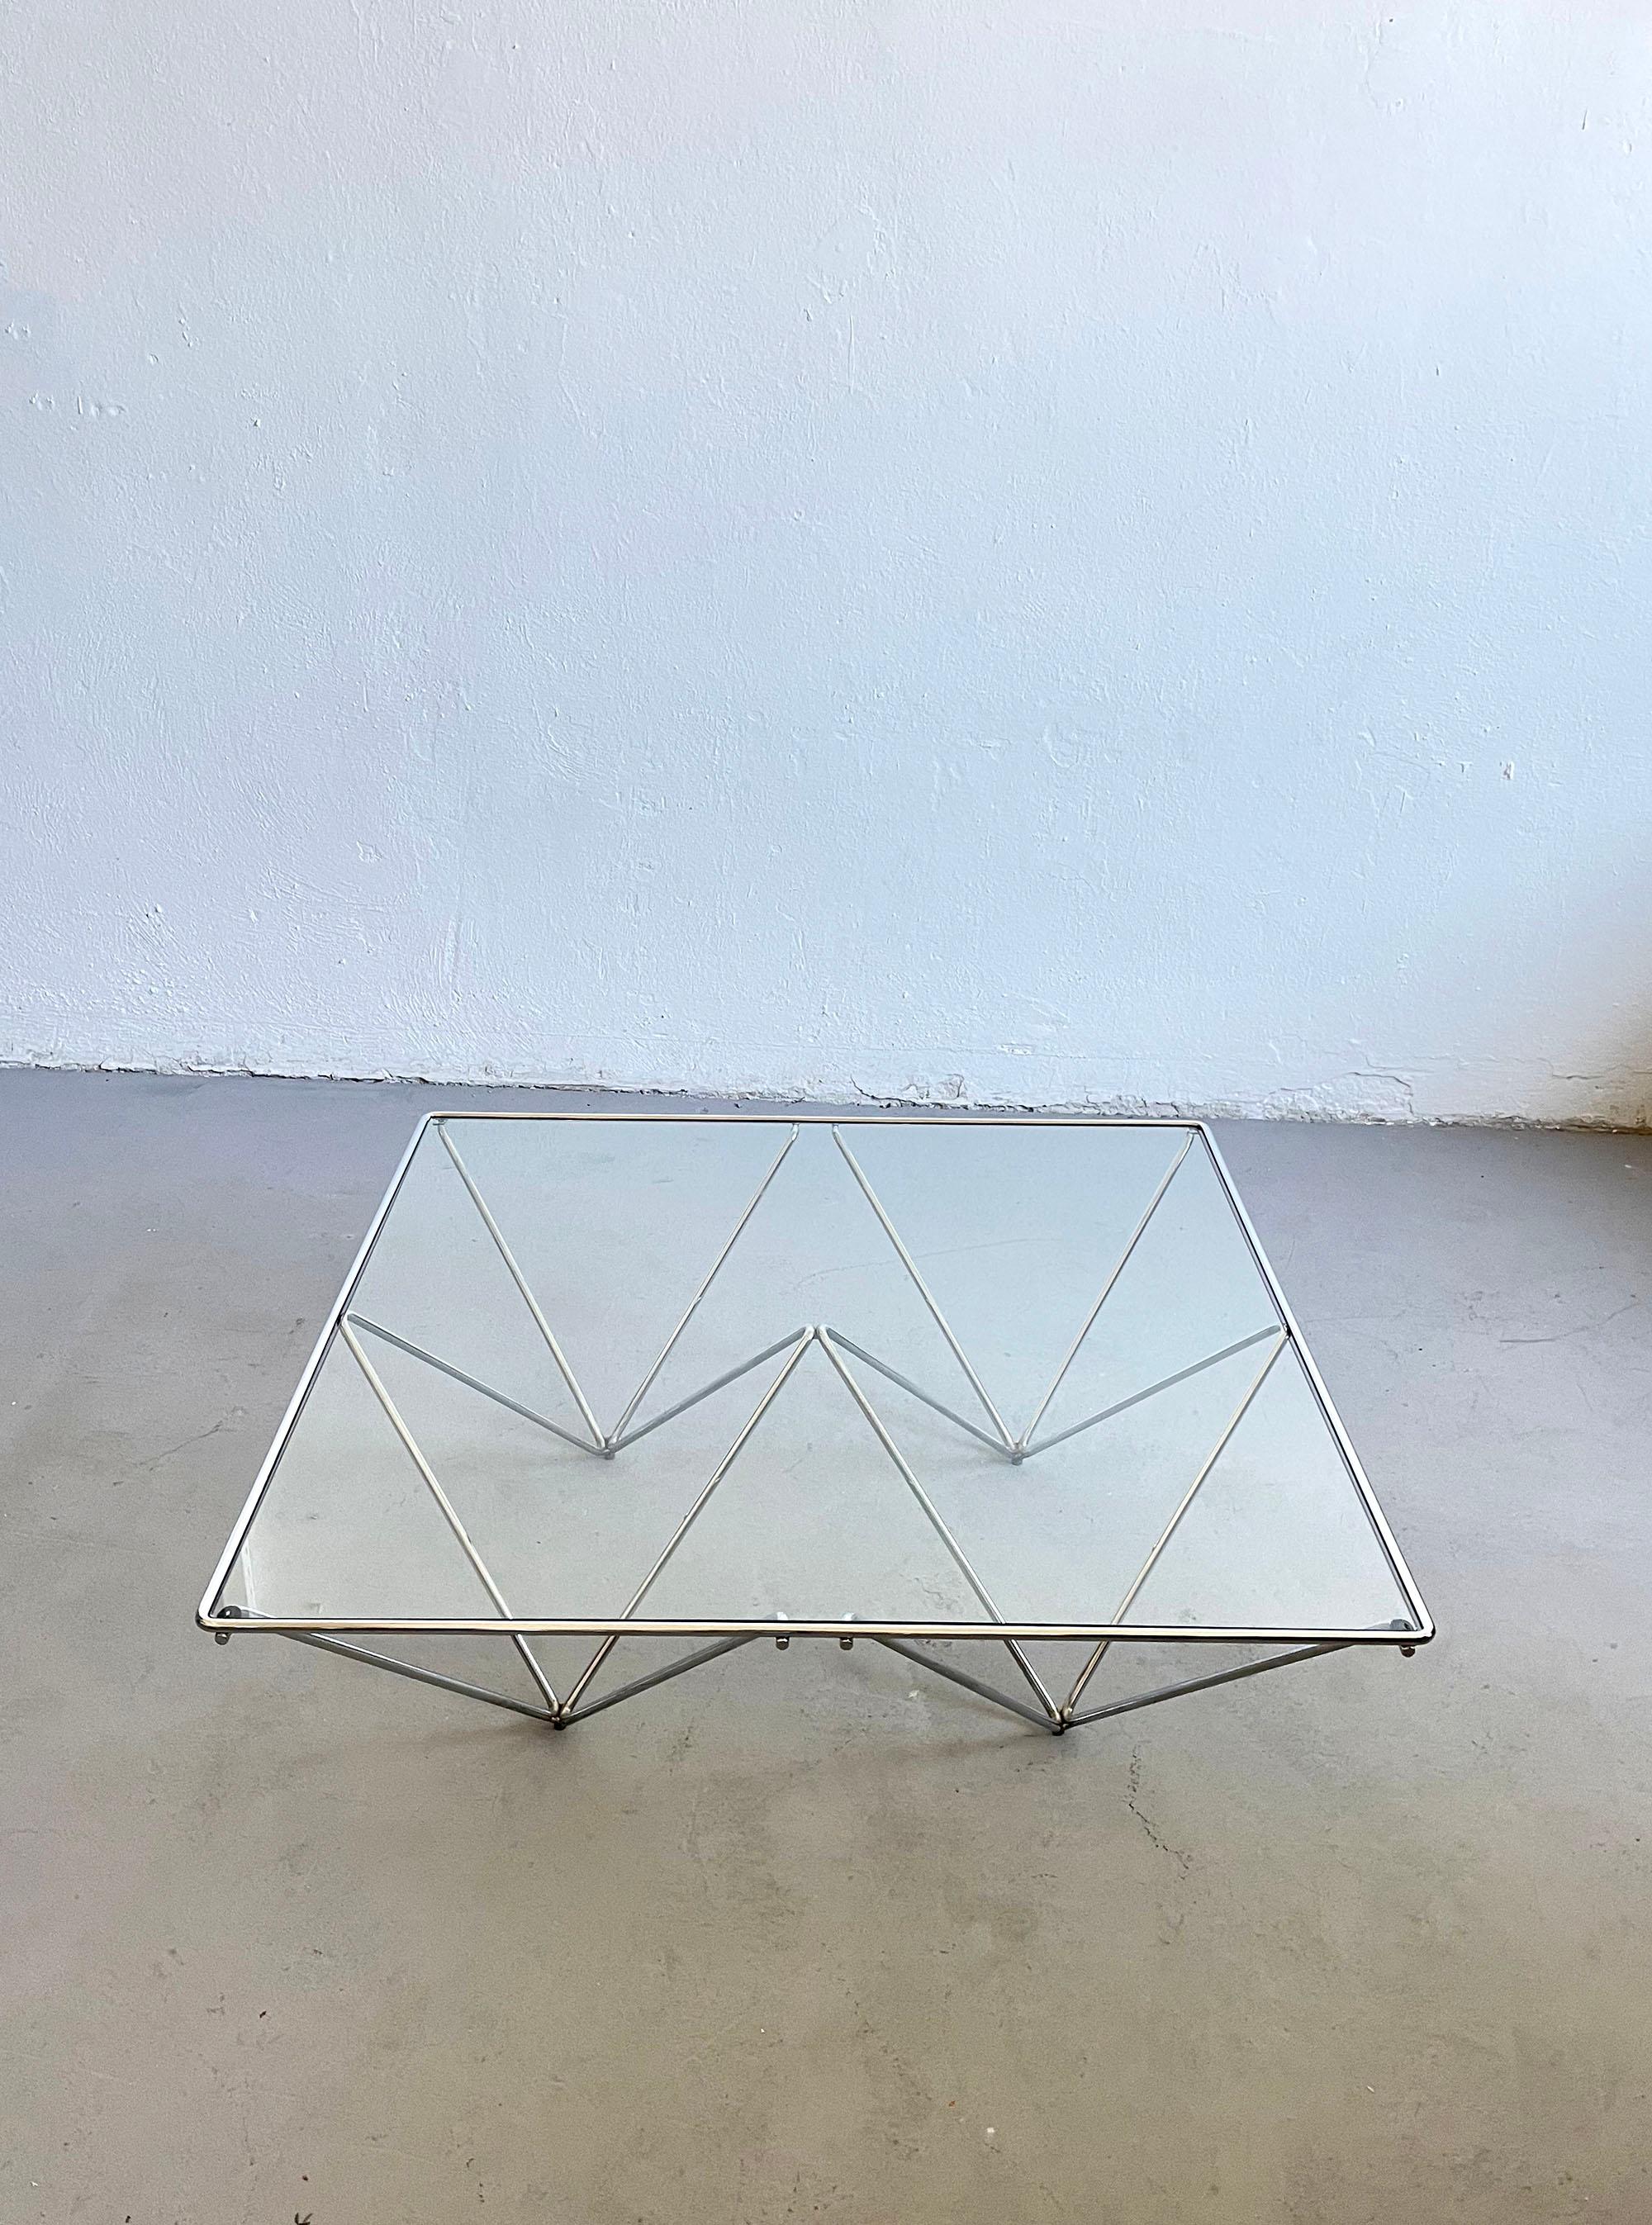 La table basse Alanda est un véritable classique du design du XXe siècle. 
À l'origine, il a été conçu par Paolo Piva pour B&B Italia dans les années 1980.

La forme architecturale minimaliste de la table est simple, géométrique et très élégante.